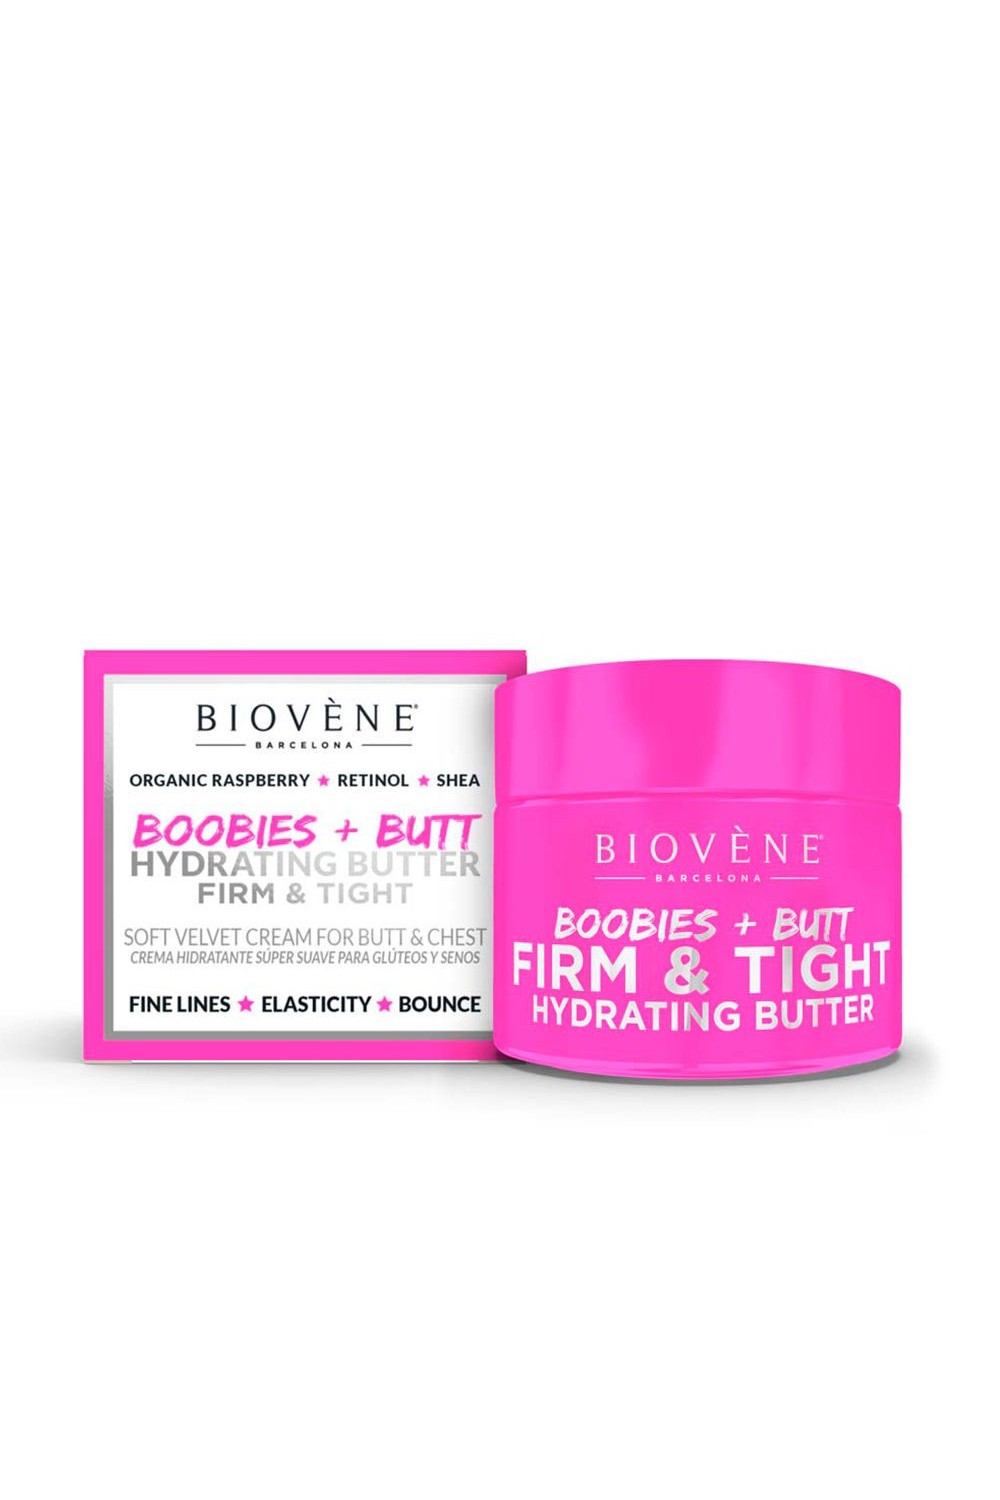 Biovene Hydrating Butter Firm y Tight Soft Velvet Cream For Butt y Chest 50ml